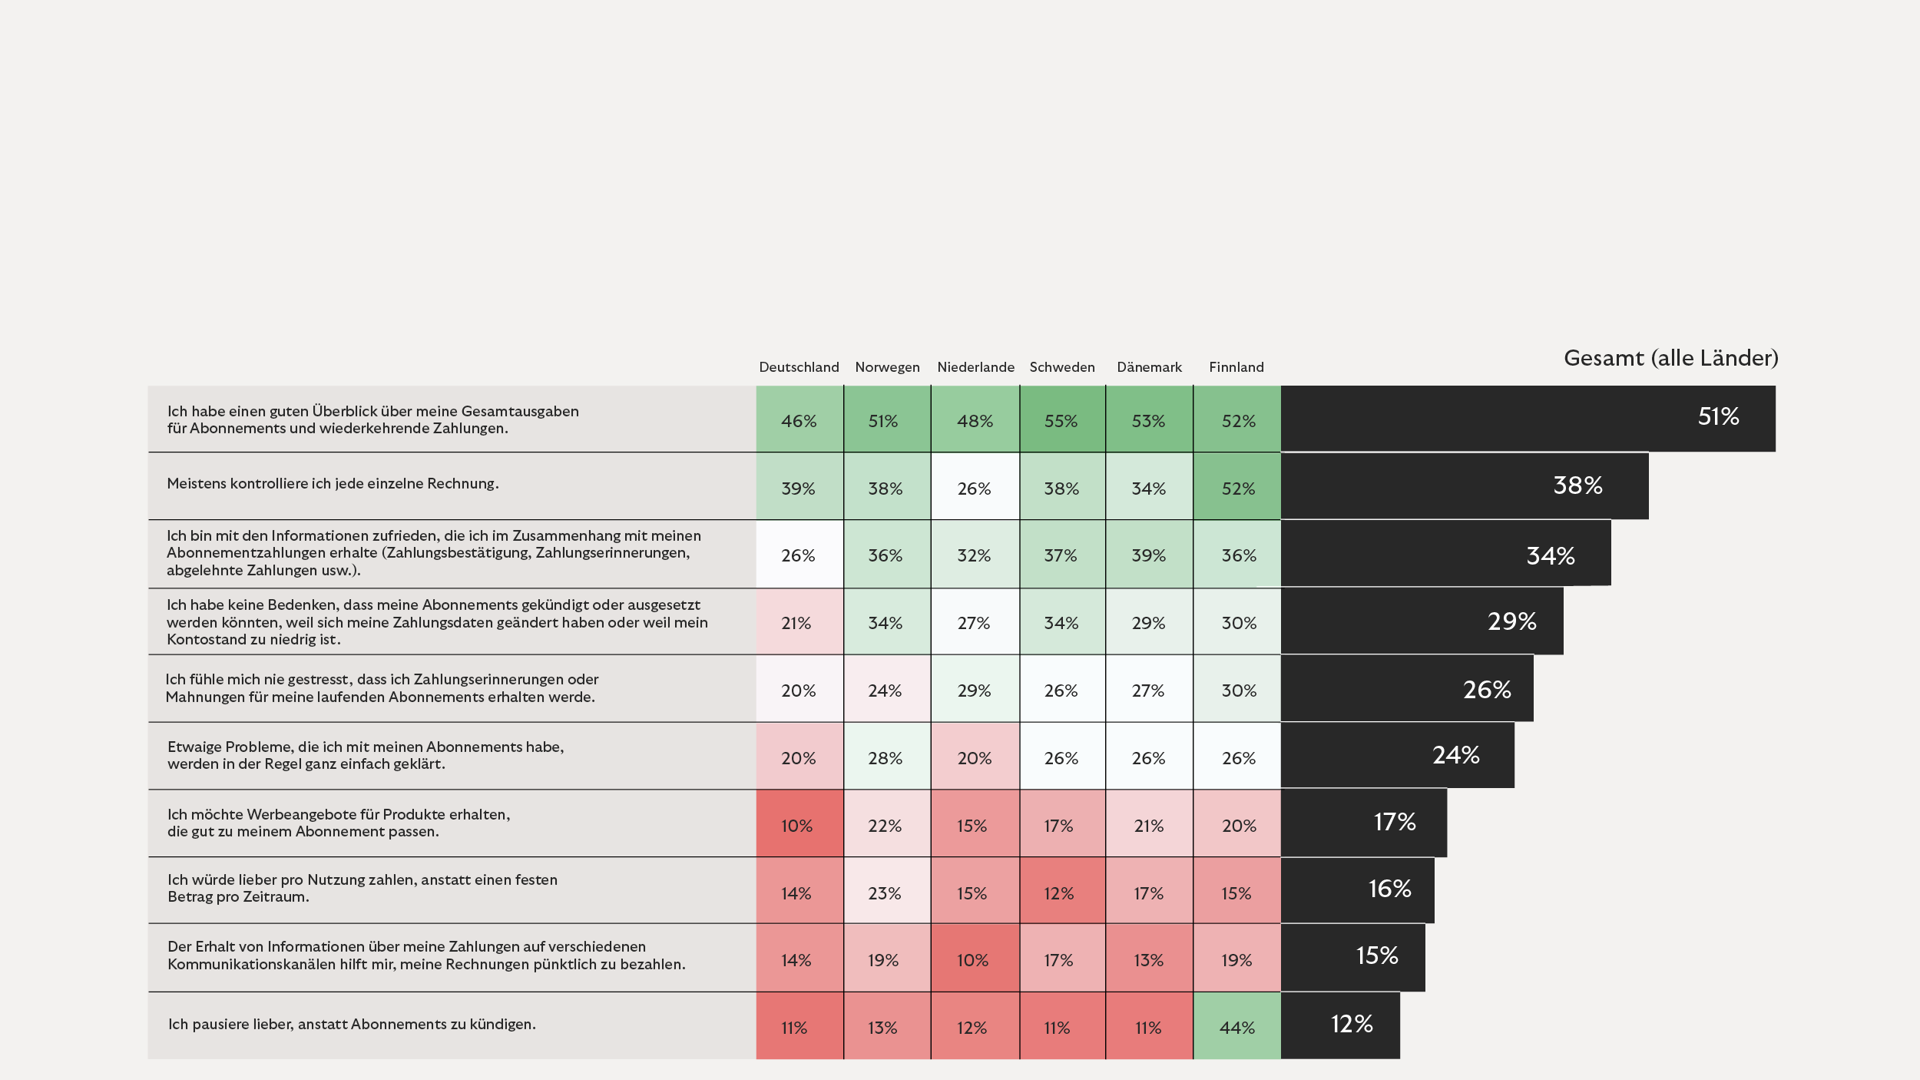 Umfrageergebnisse zur Nutzung: Die Tabelle zeigt die prozentuale Zustimmung der Befragten zu verschiedenen Statements per Land.